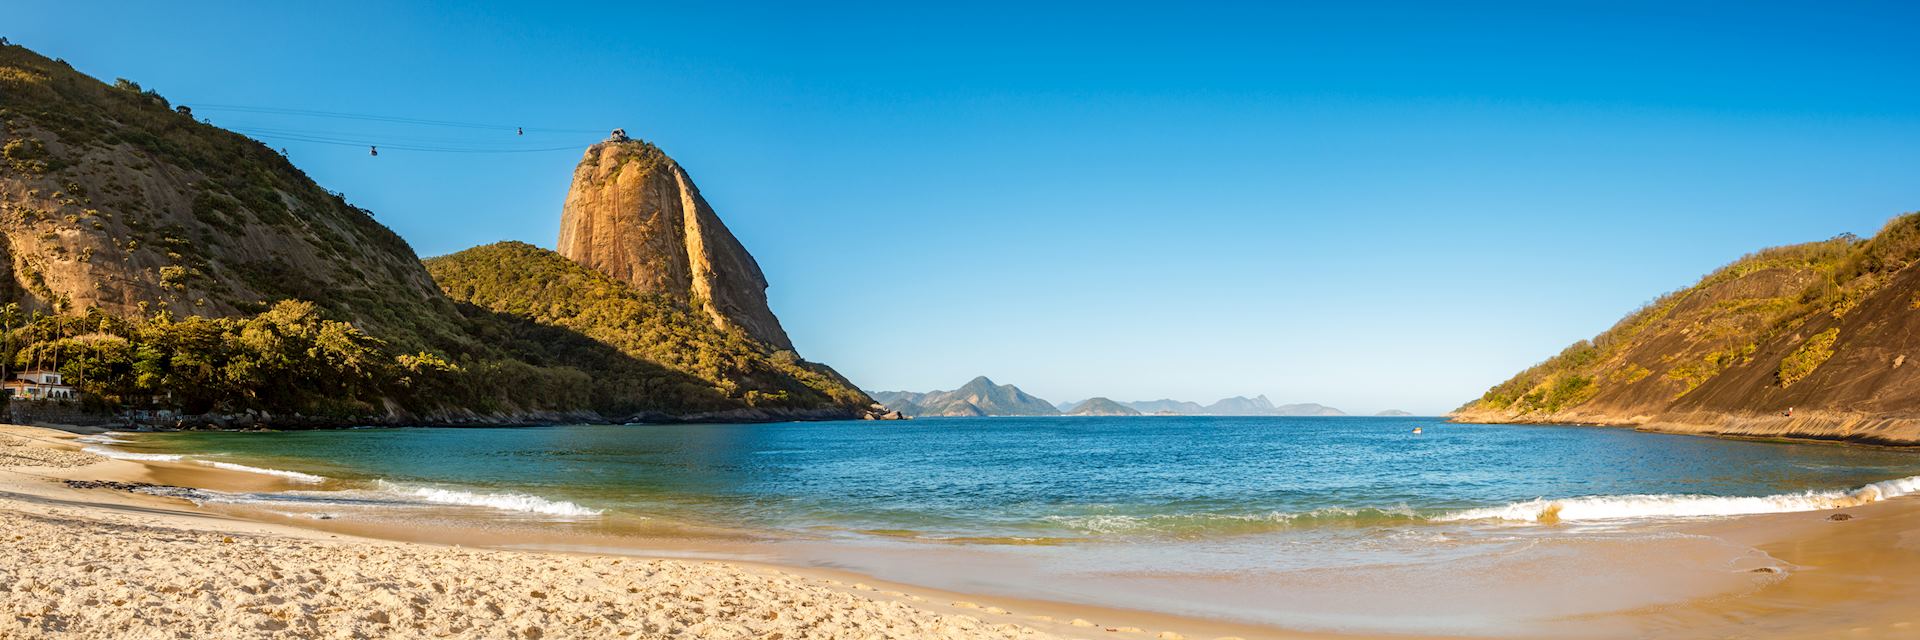 Vermelha Beach near Rio de Janeiro